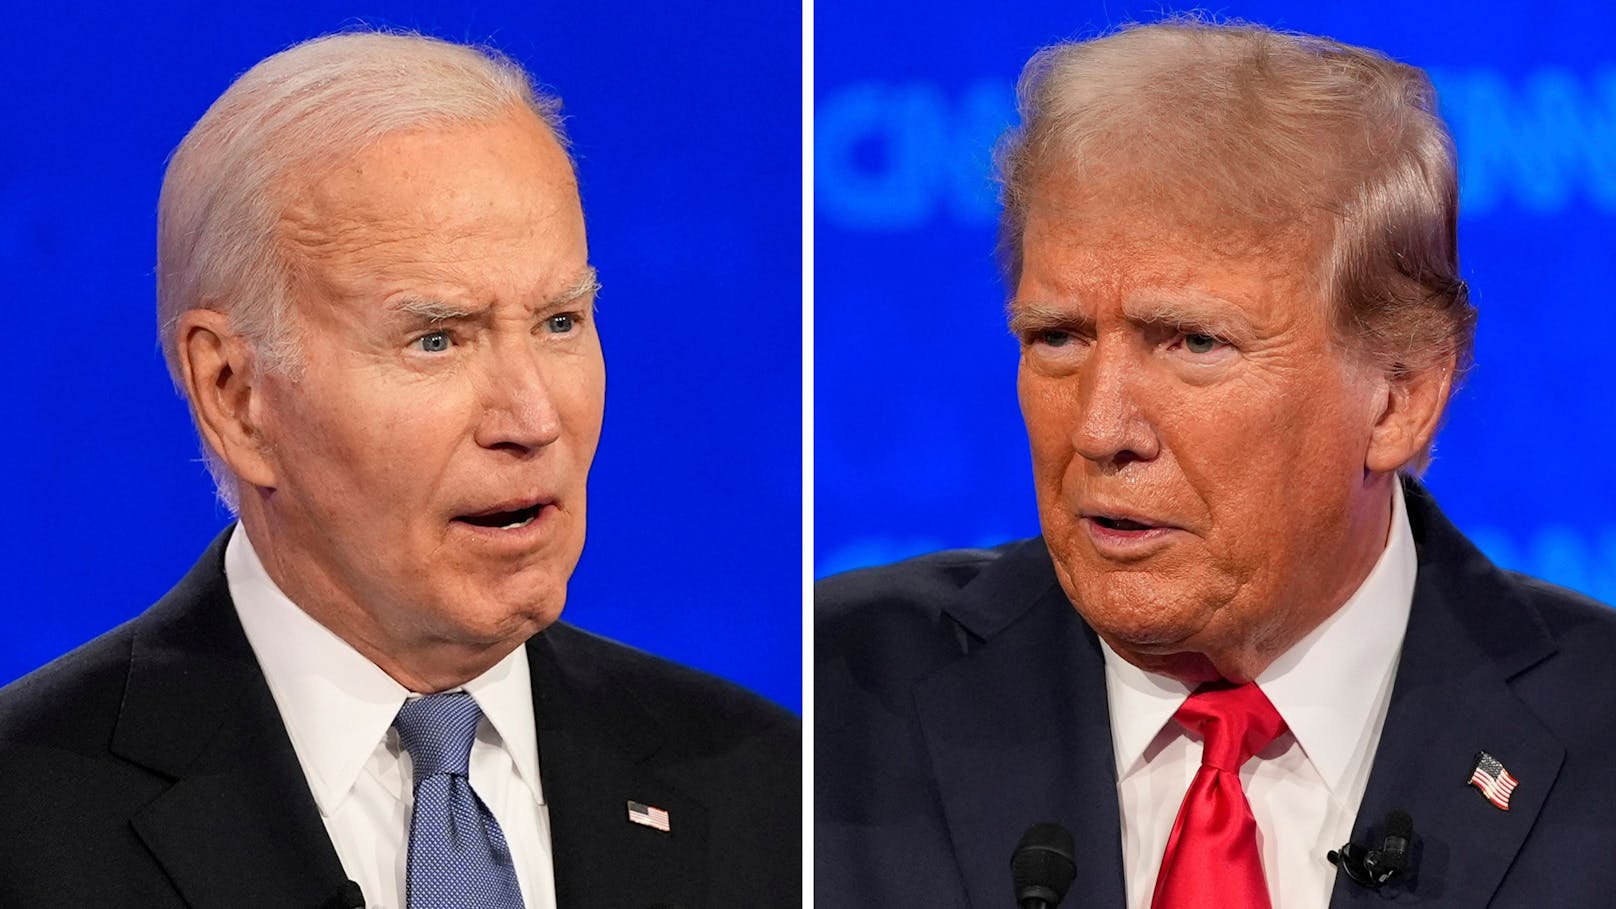 Die erste Debatte zwischen Joe Biden und Donald Trump lief unter neuen Regeln und versprach hitzige Diskussionen – auch um das hohe Alter der beiden. "Heute" hat die besten Bilder des TV-Duells.